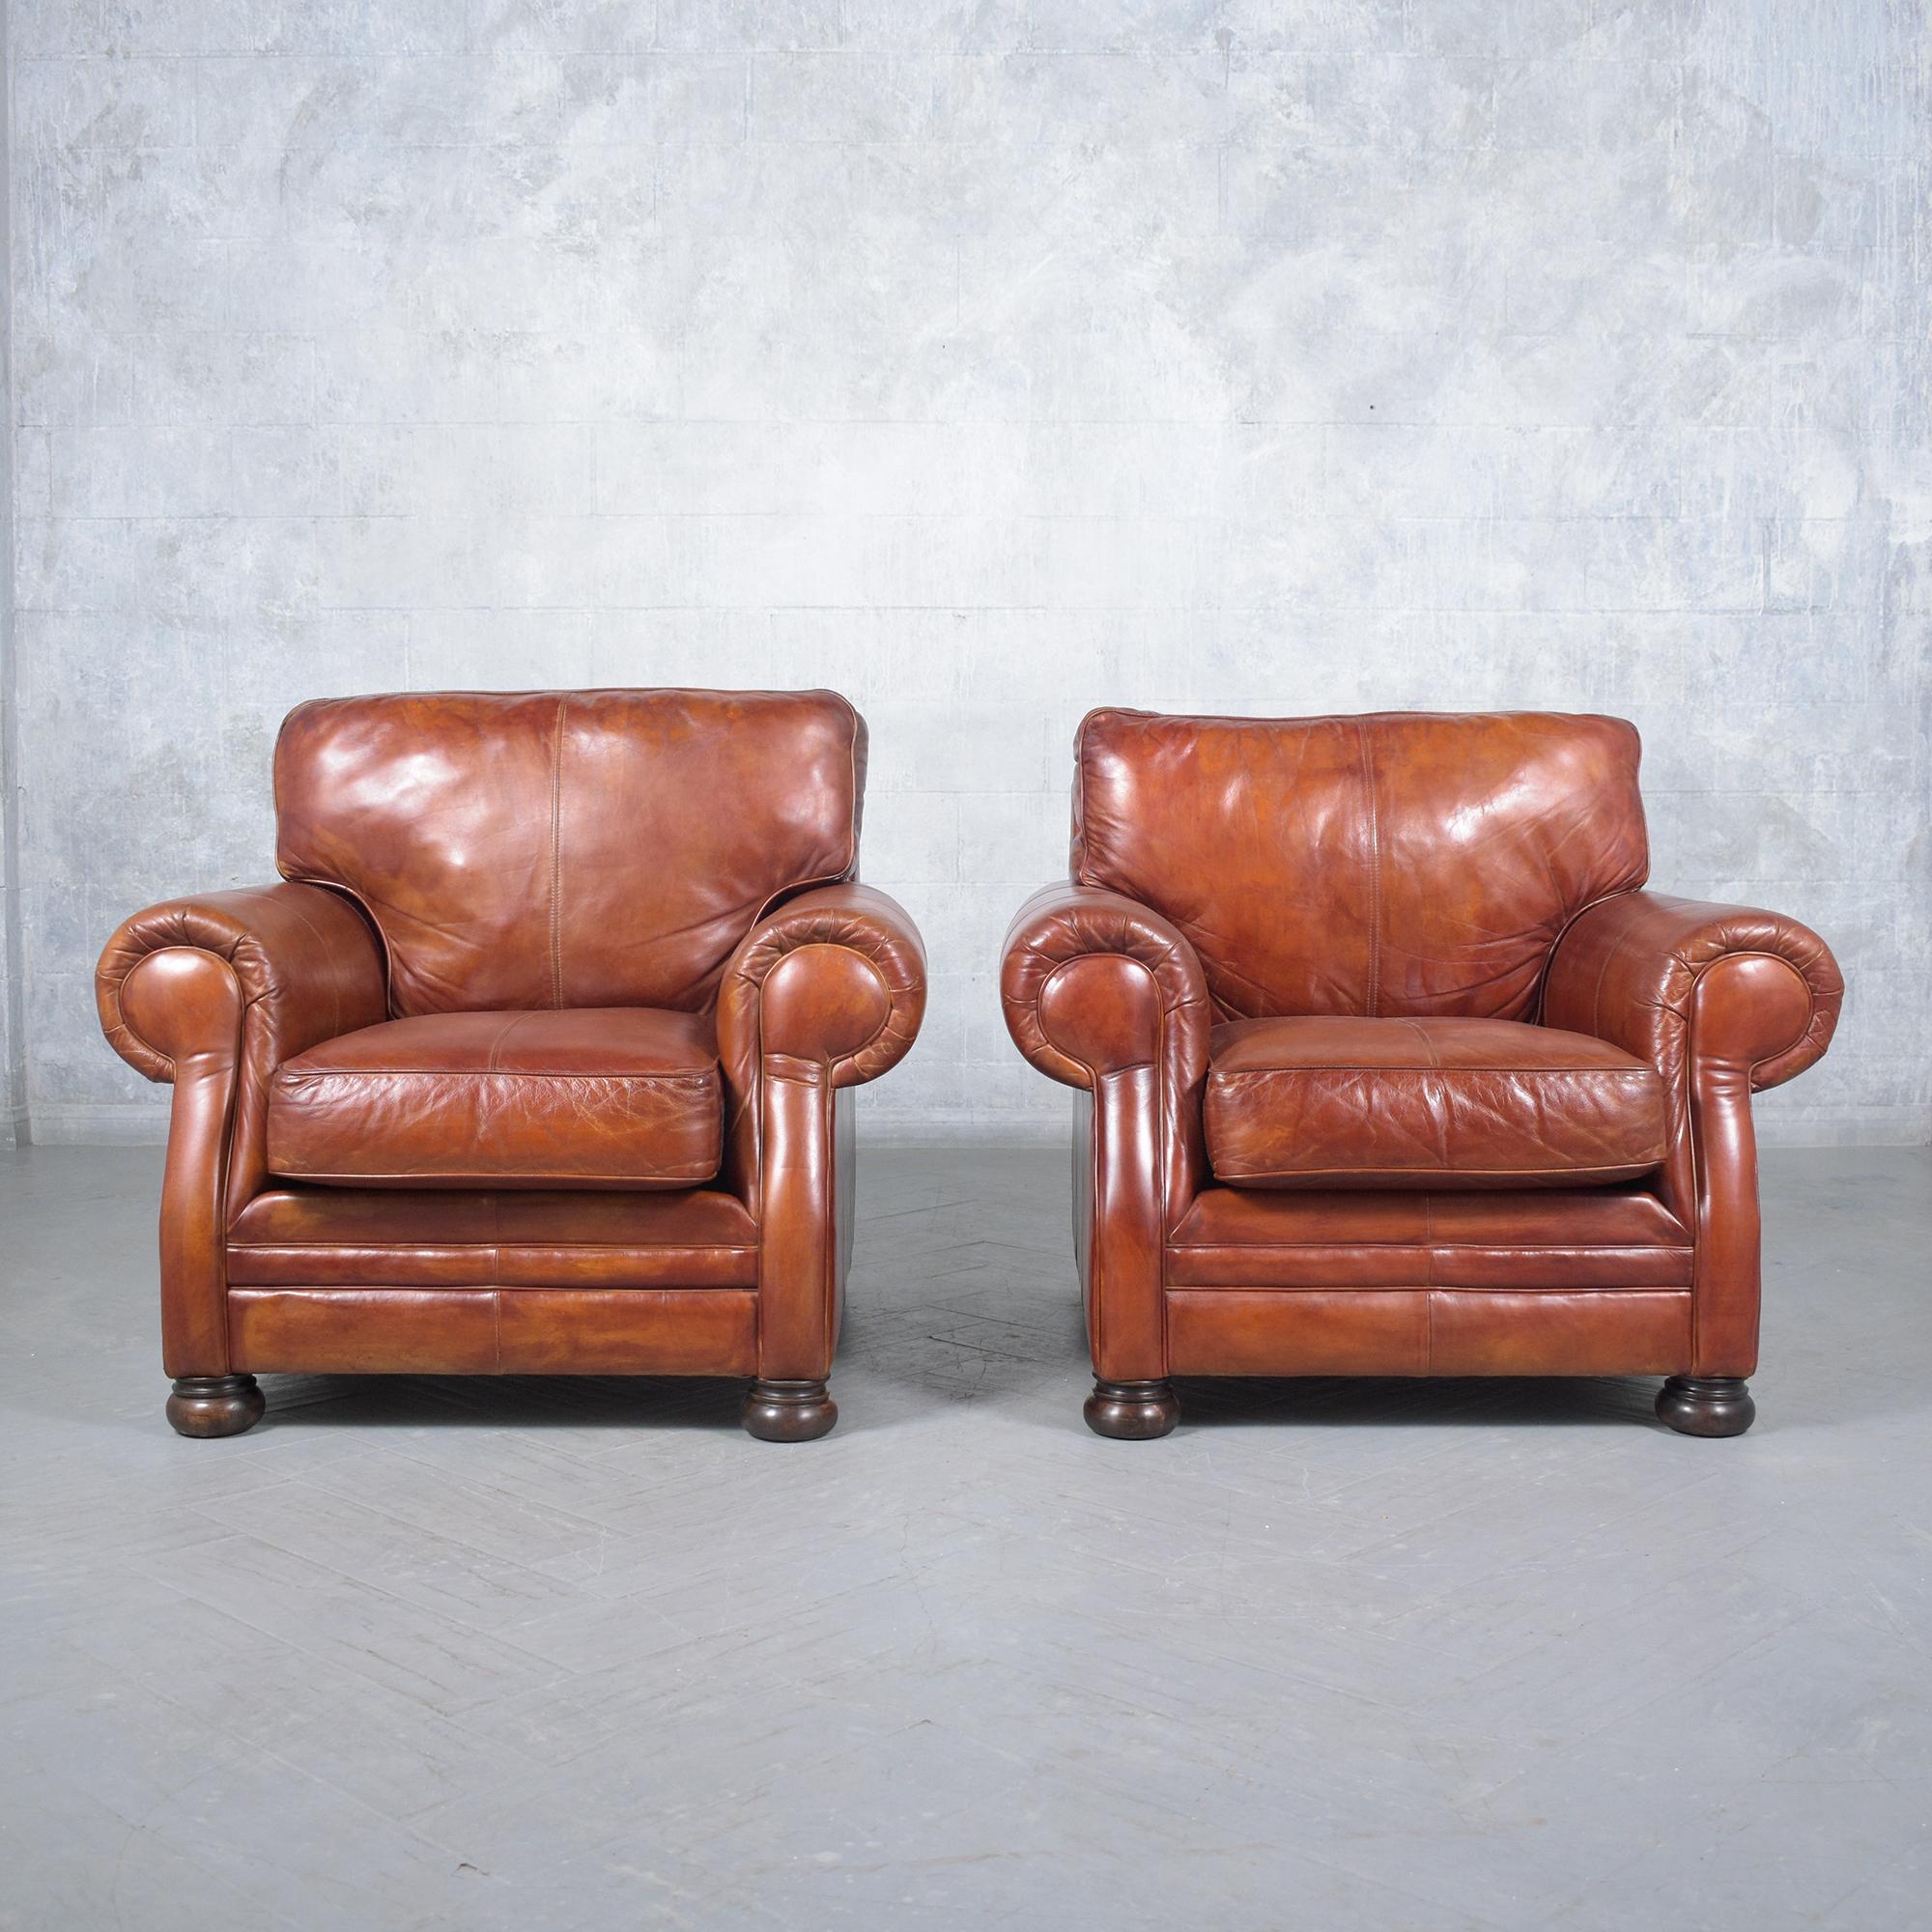 Découvrez l'élégance intemporelle de notre paire de fauteuils en cuir vintage, chacun méticuleusement restauré par notre équipe d'artisans experts. Ces fauteuils club vintage incarnent l'essence d'un design classique et d'un savoir-faire